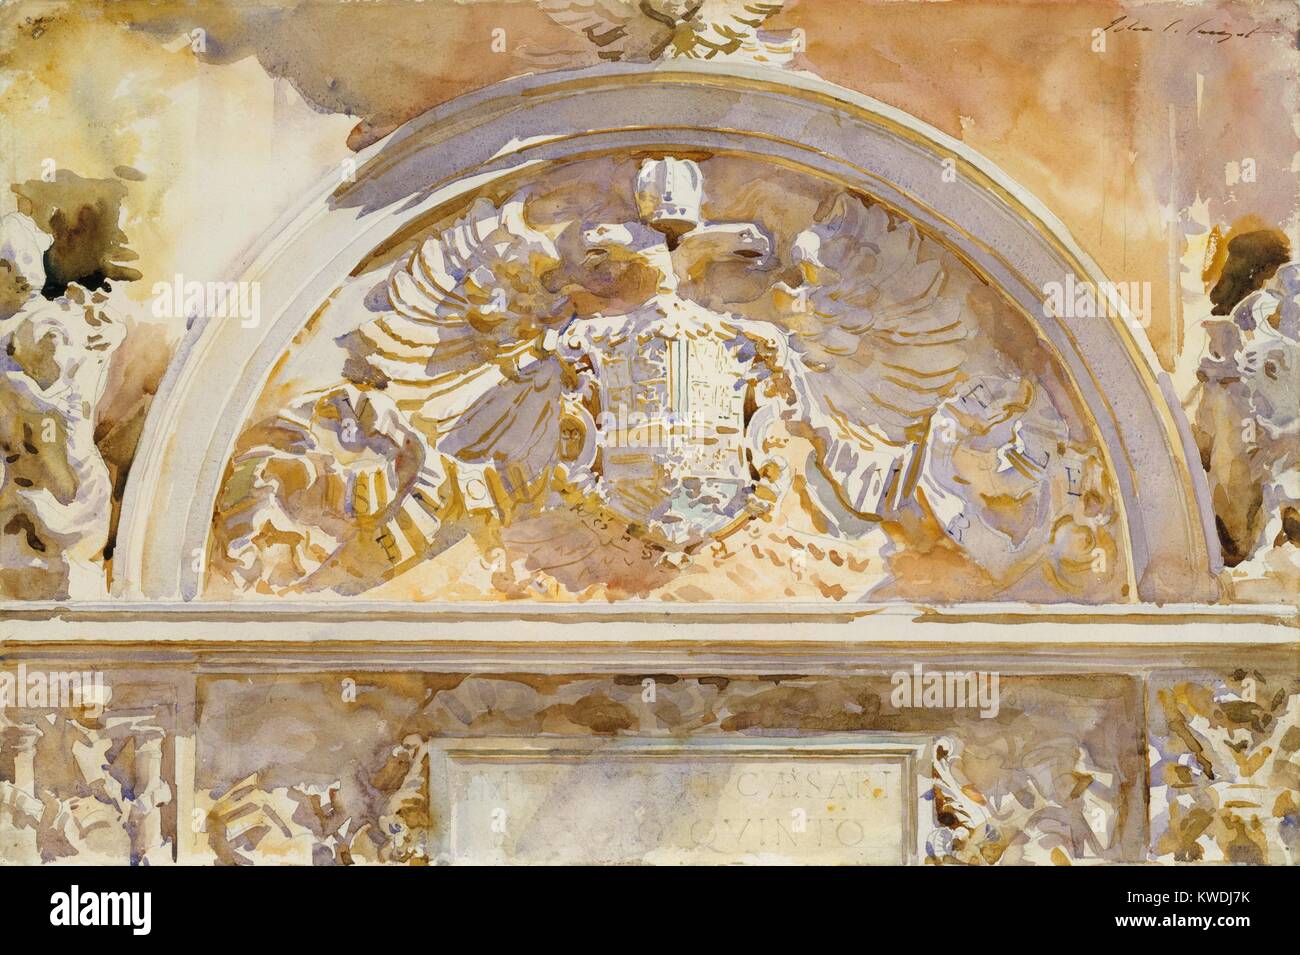 Wappen von KARL V. VON SPANIEN, von John Singer Sargent, 1912, American Aquarell Malerei. Sargent machte eine graphit zeichnung, über die er in warmen Farbtönen einschließlich gesättigte Gelb gestrichen. Er verwandelte einen monochromatischen geschnitzten Stein Relief mit brillanten Farben. Die heraldischen Abzeichen ist in der Alhambra in Granada, Spanien (BSLOC 2017 9 48) Stockfoto